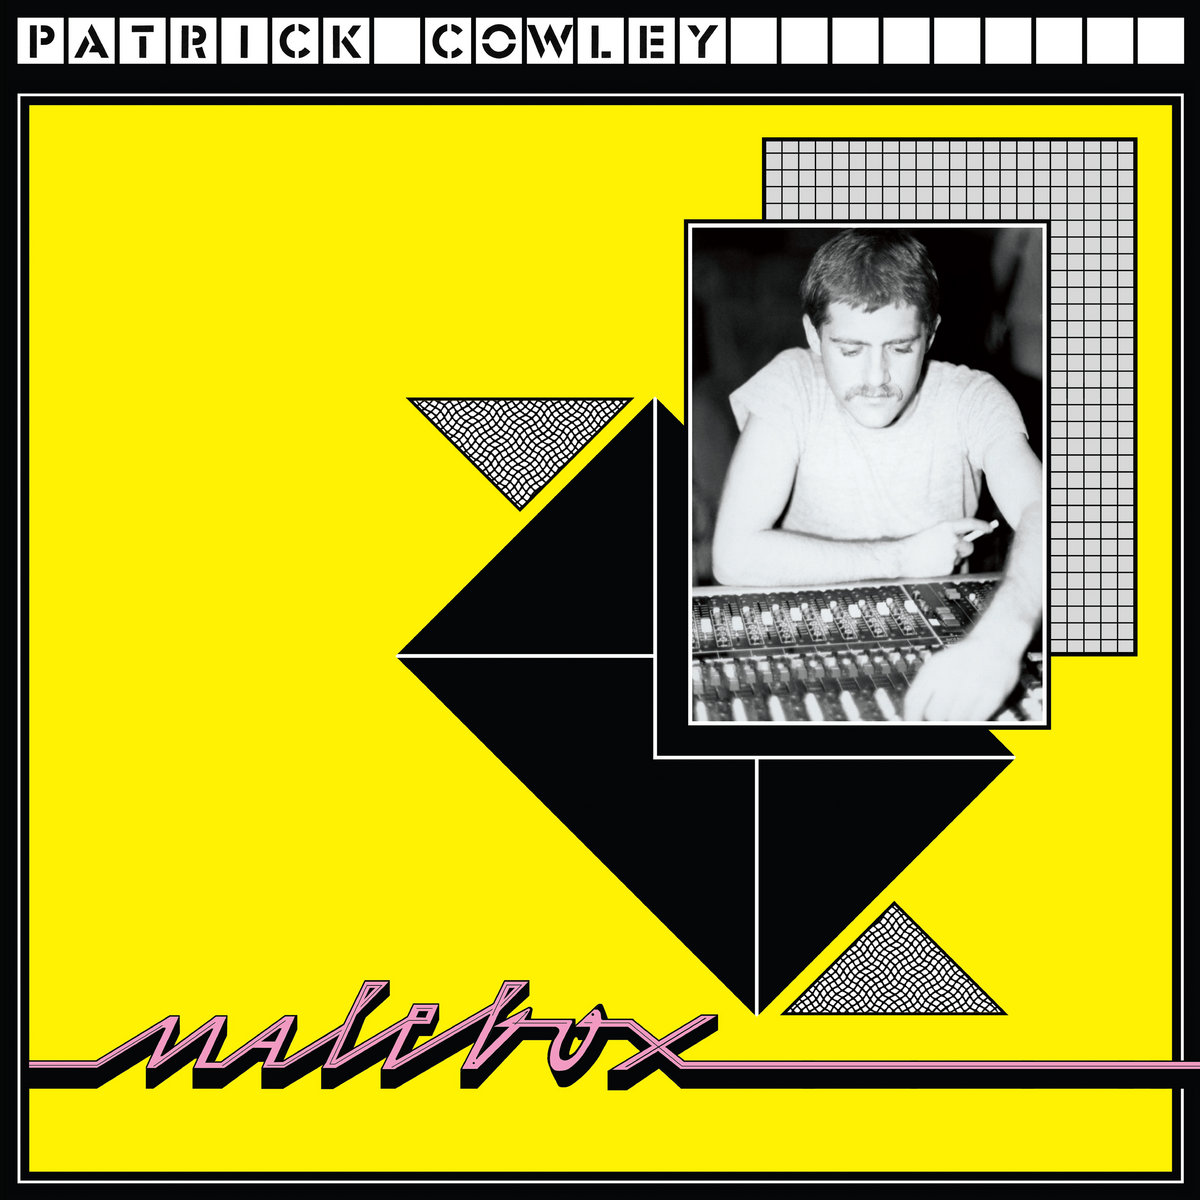 PATRICK COWLEY - MALEBOW - VINYLE LP DARK ENTRIES RECORDS